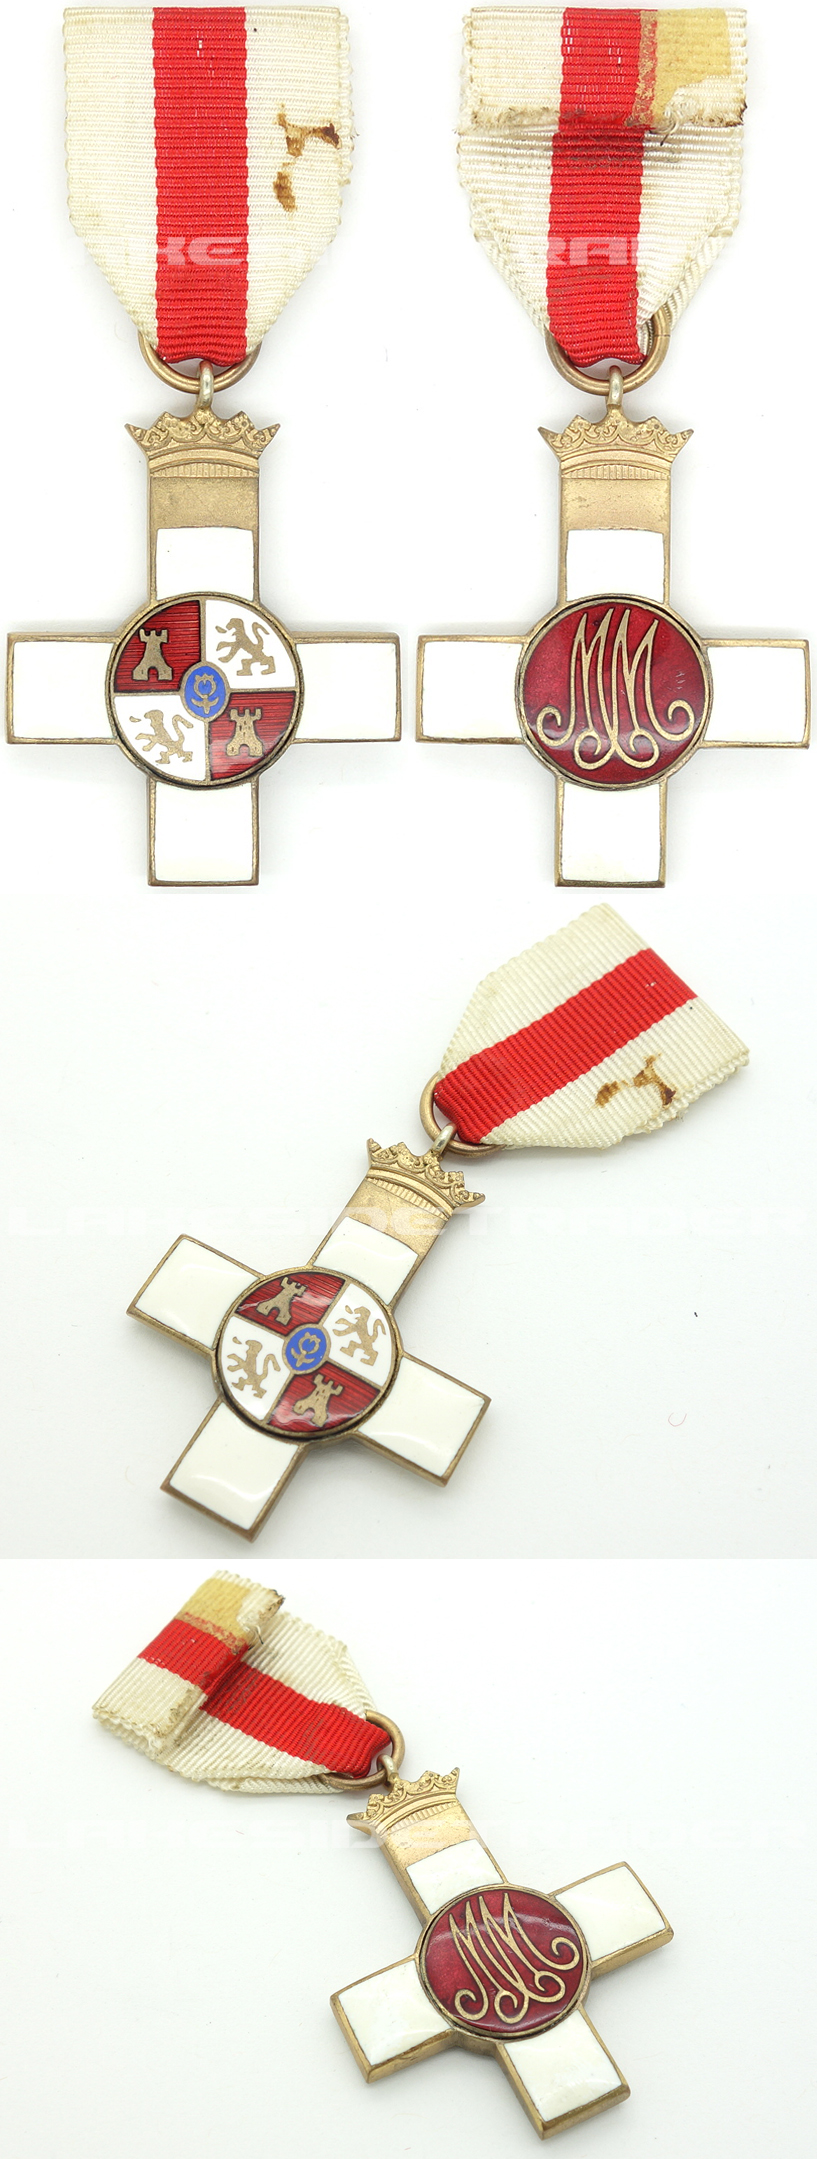 White Decoration - Order of Military Merit Cross